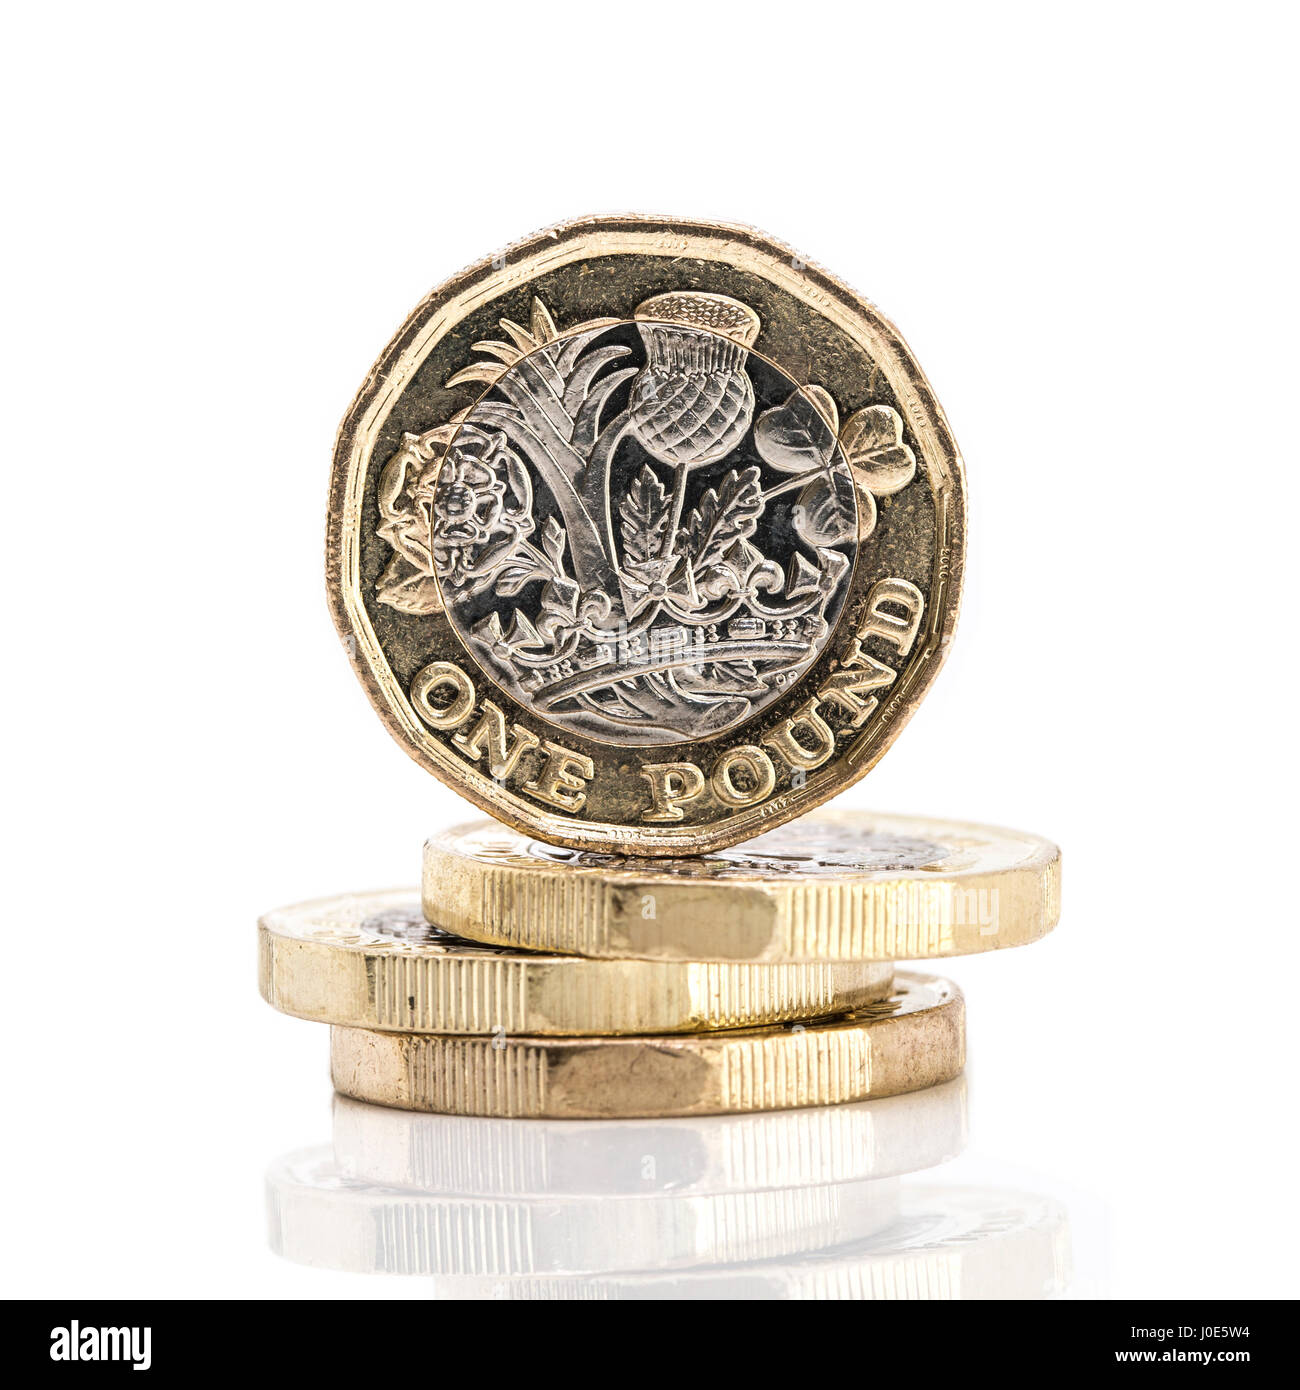 SWINDON, UK - APRIL 06, 2017:4 neue ein-Pfund-Münzen auf weißem Hintergrund Stockfoto